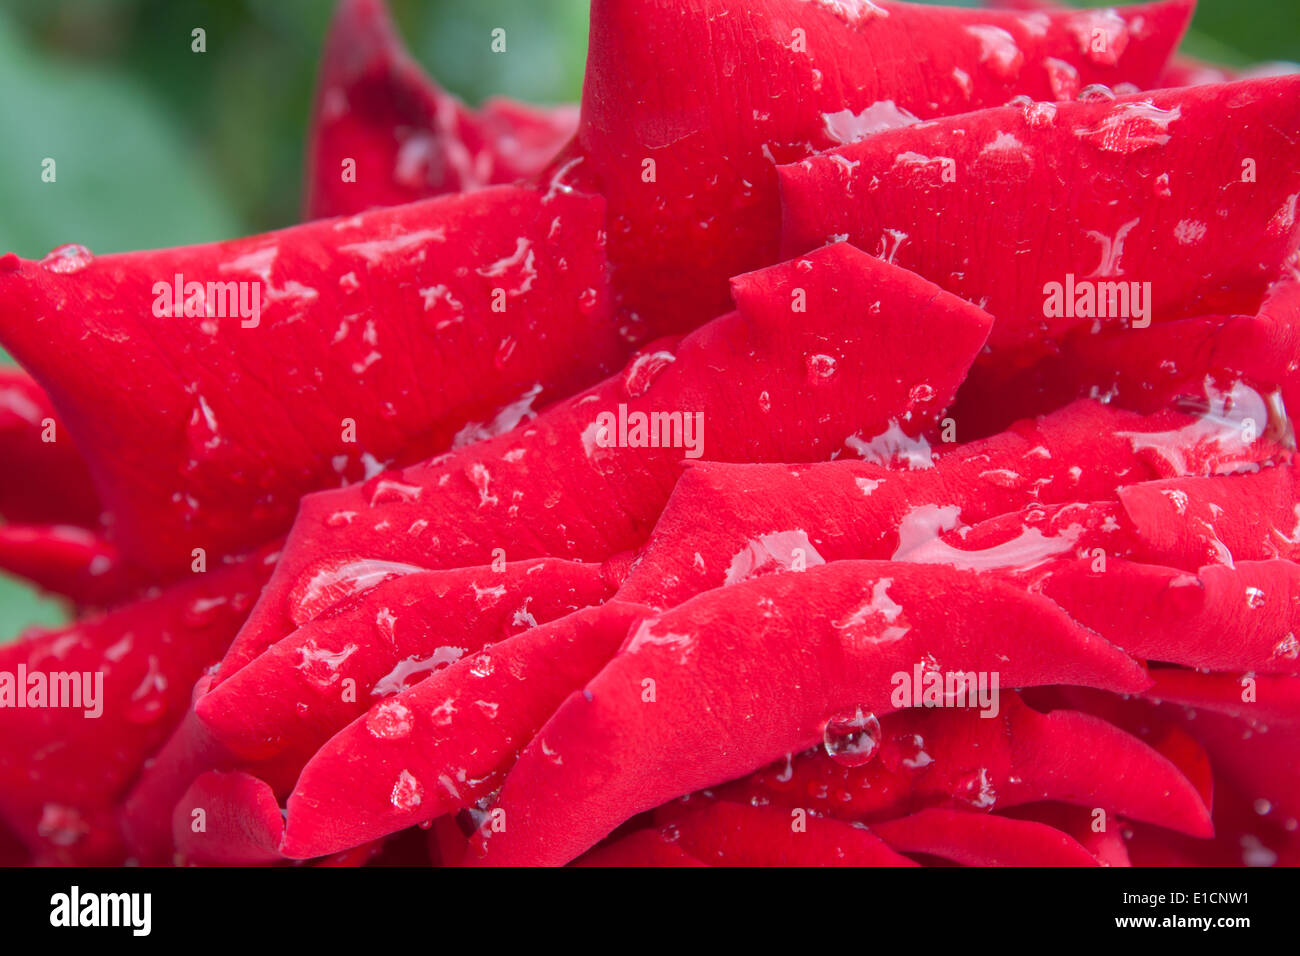 rose petals zoom closeup dewdrops rain 'after rain' drop petal drops dew flower bloom spring red pink vivid color nature Stock Photo